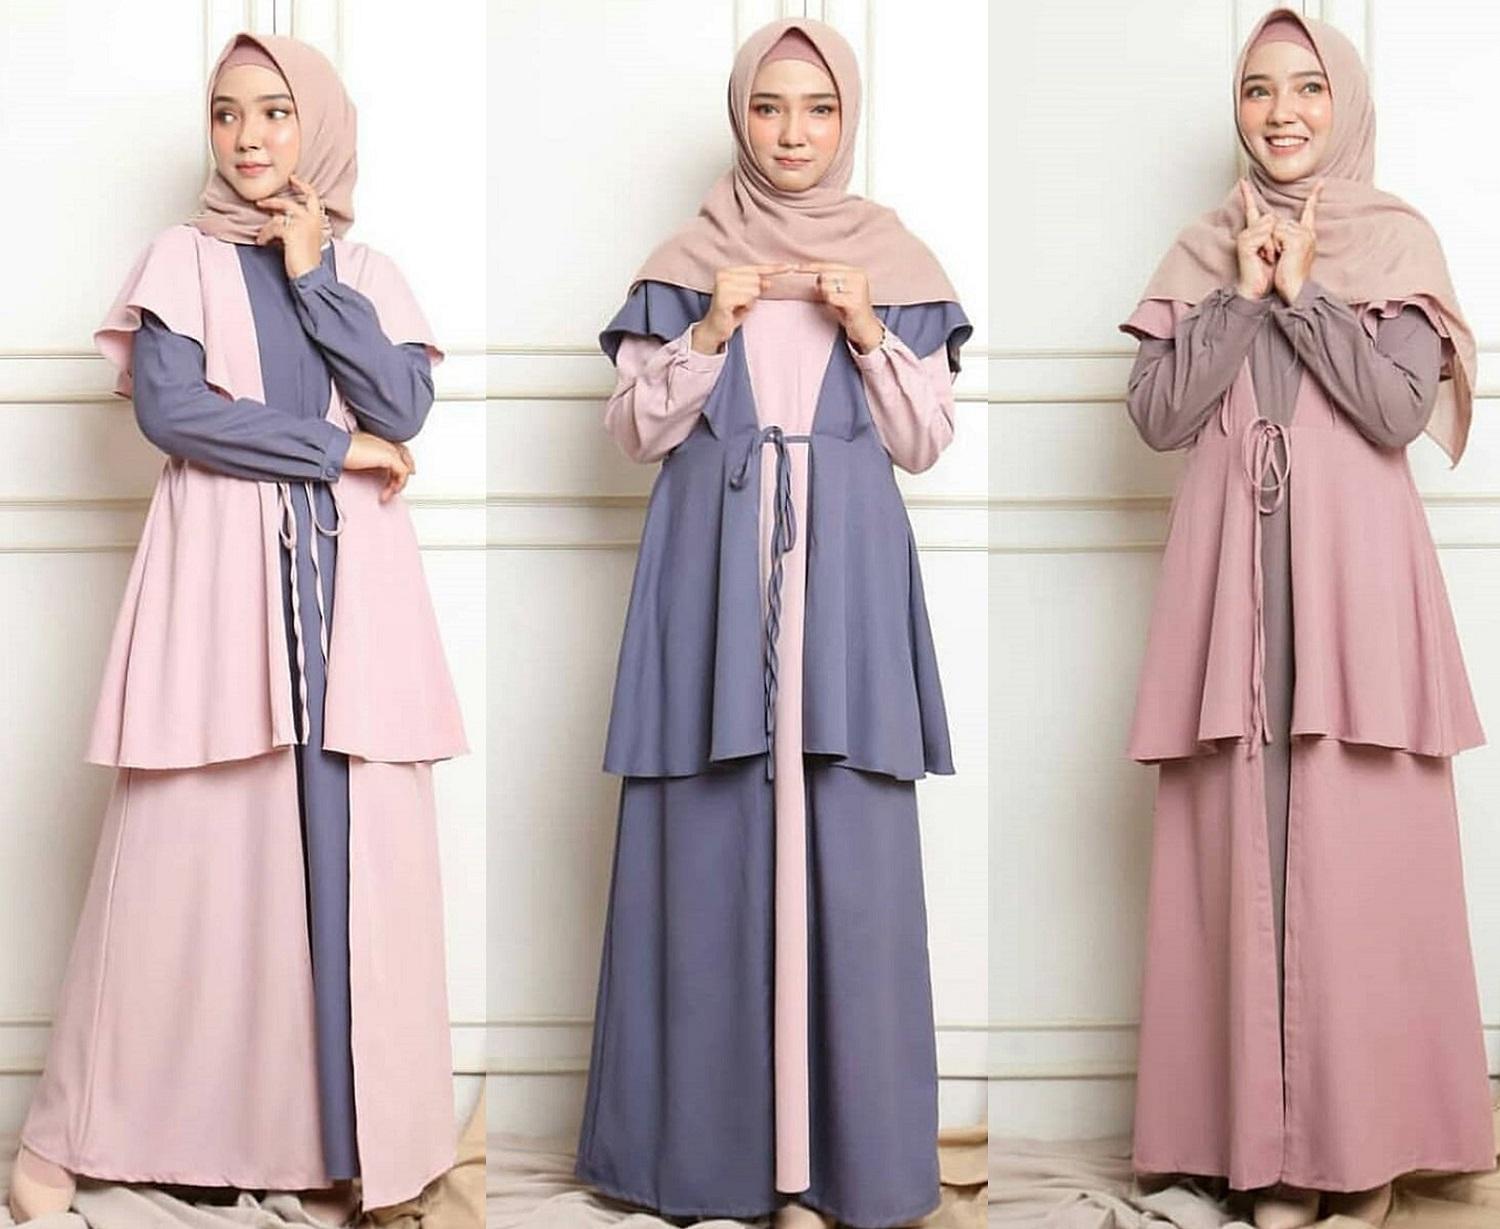 Baju Muslim Modern Gamis Morza Maxi Dress Moscrepe (TIDAK TERMASUK HIJAB) Trendy Modern Wanita Baju Panjang Polos Muslim Gaun Kerja Dress Pesta Murah Terbaru Maxi Muslimah Termurah Pakaian Modis Baju Panjang Simple Casual Elegant 2019